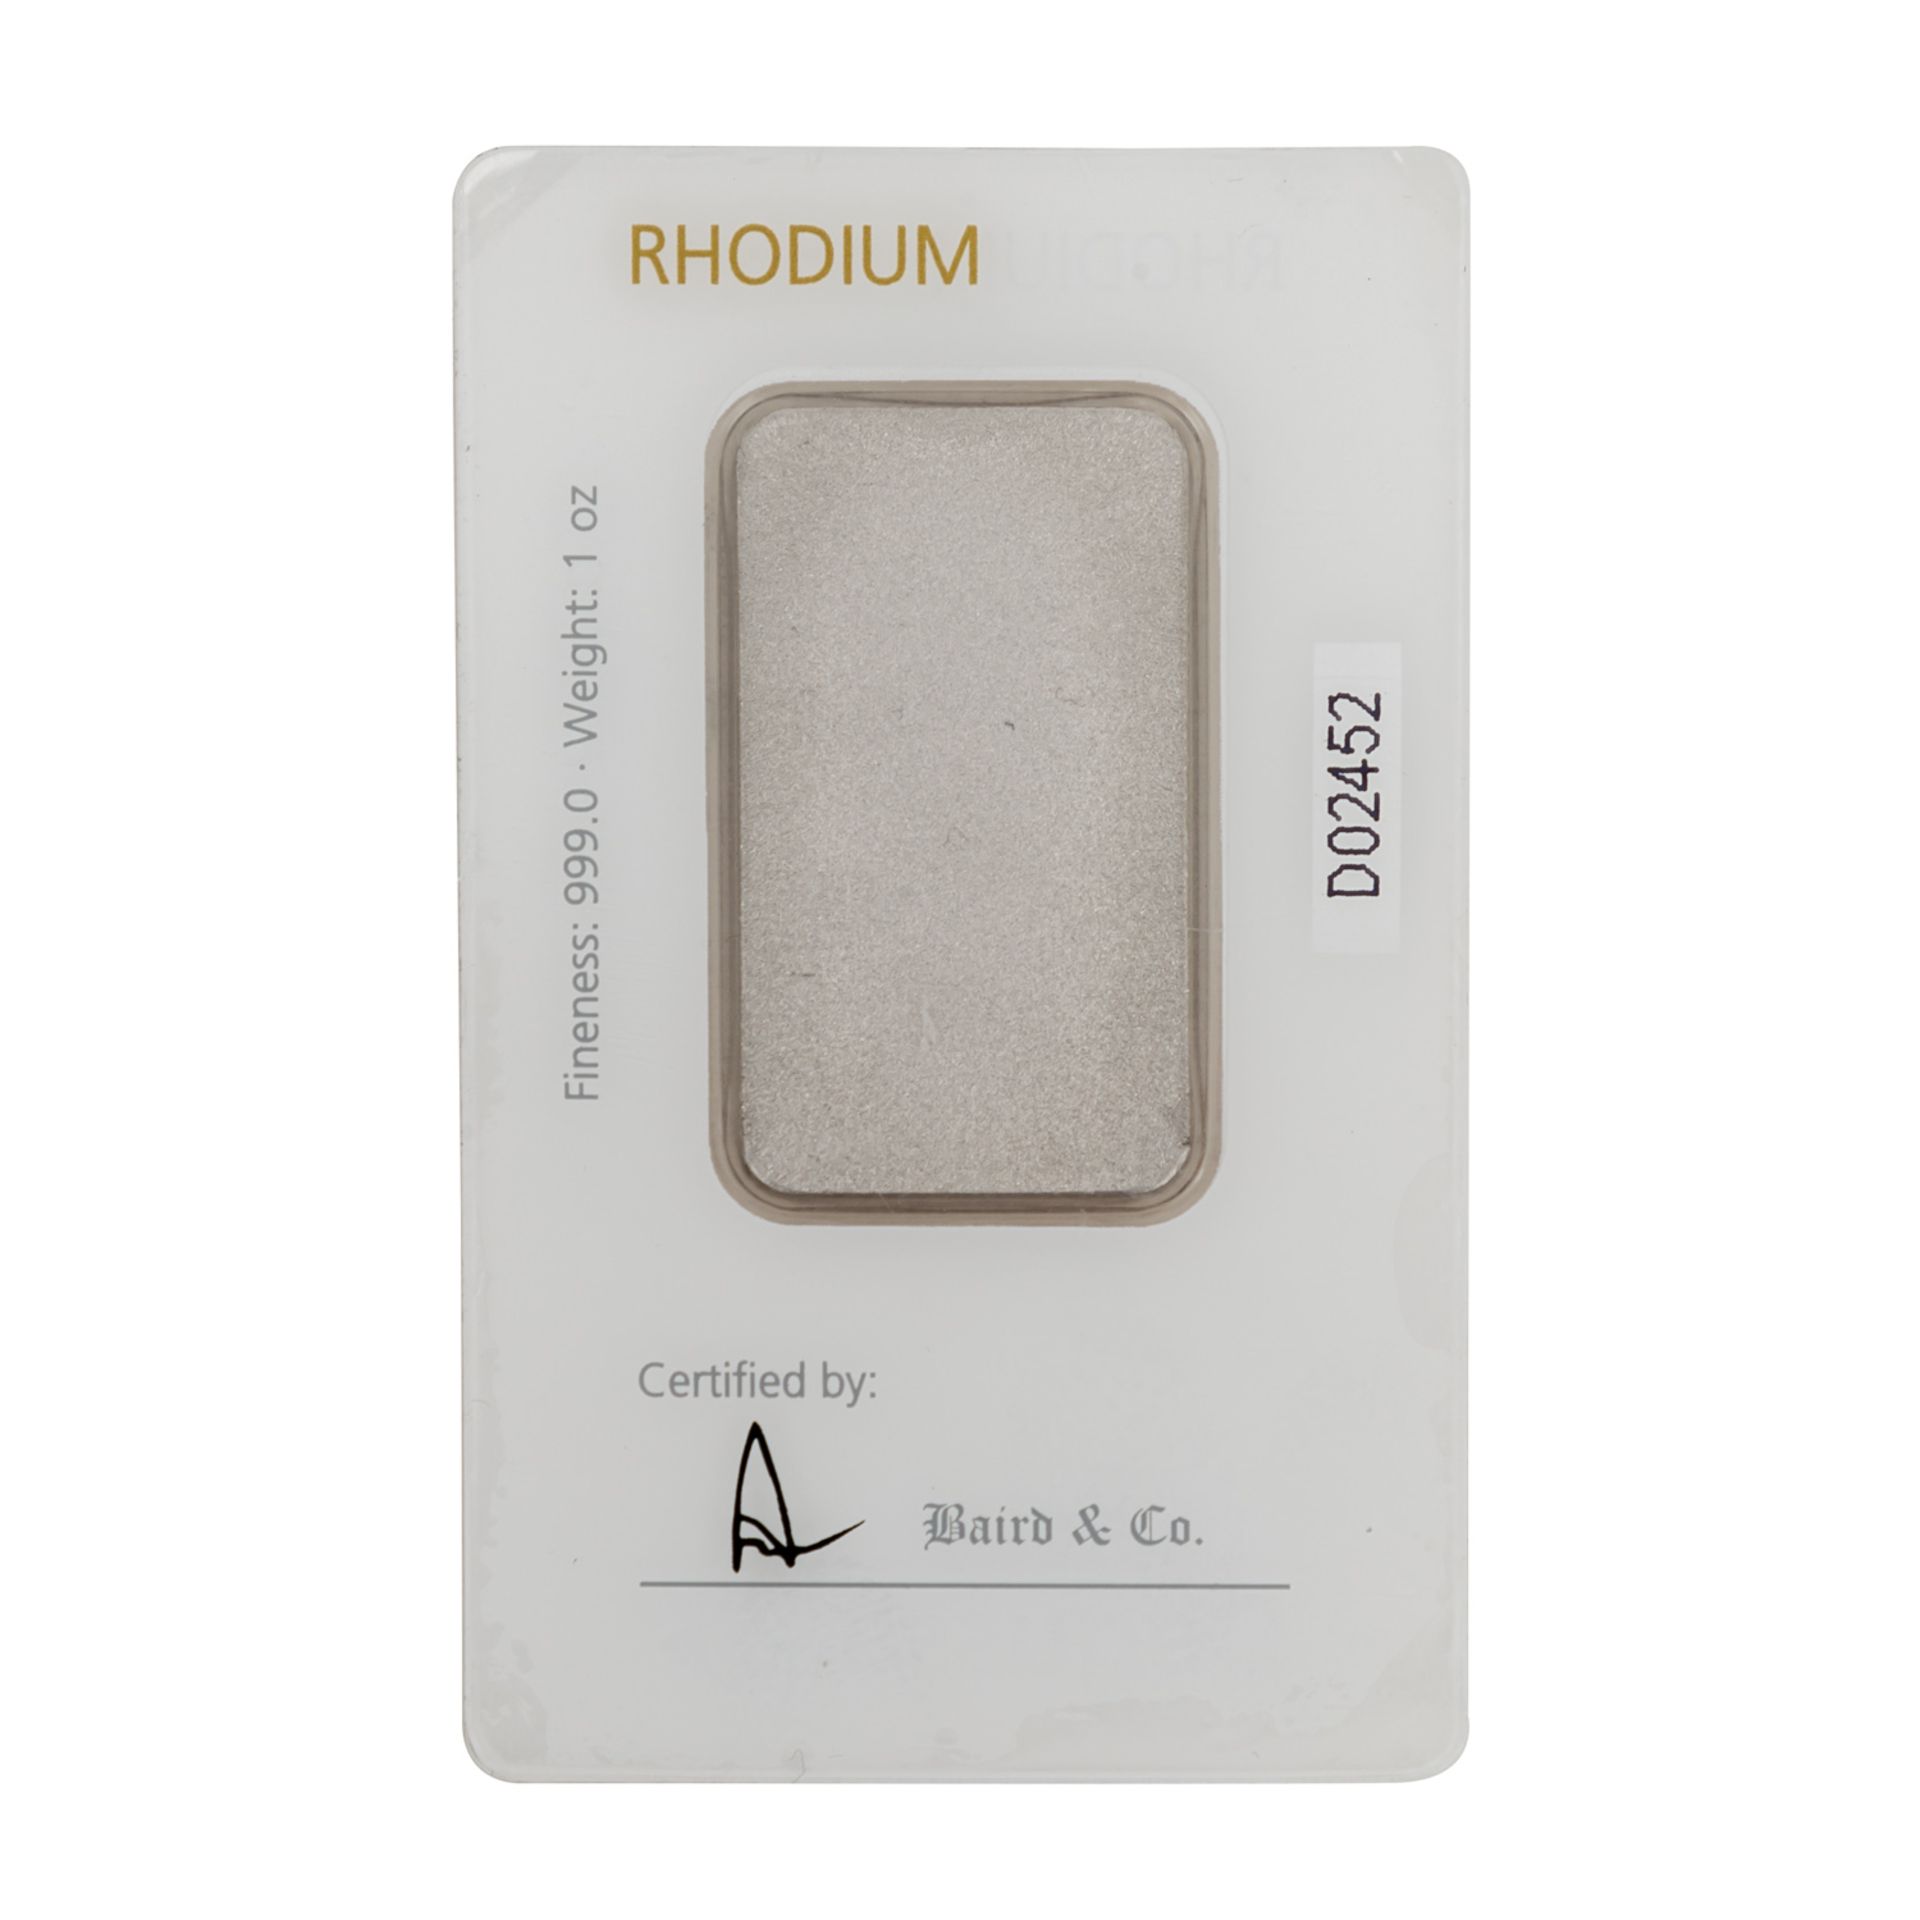 RHODIUM Barren 1 Unze Rhodium fein, geprägt, Degussa, hergestellt und zertifiziert vo - Image 2 of 3